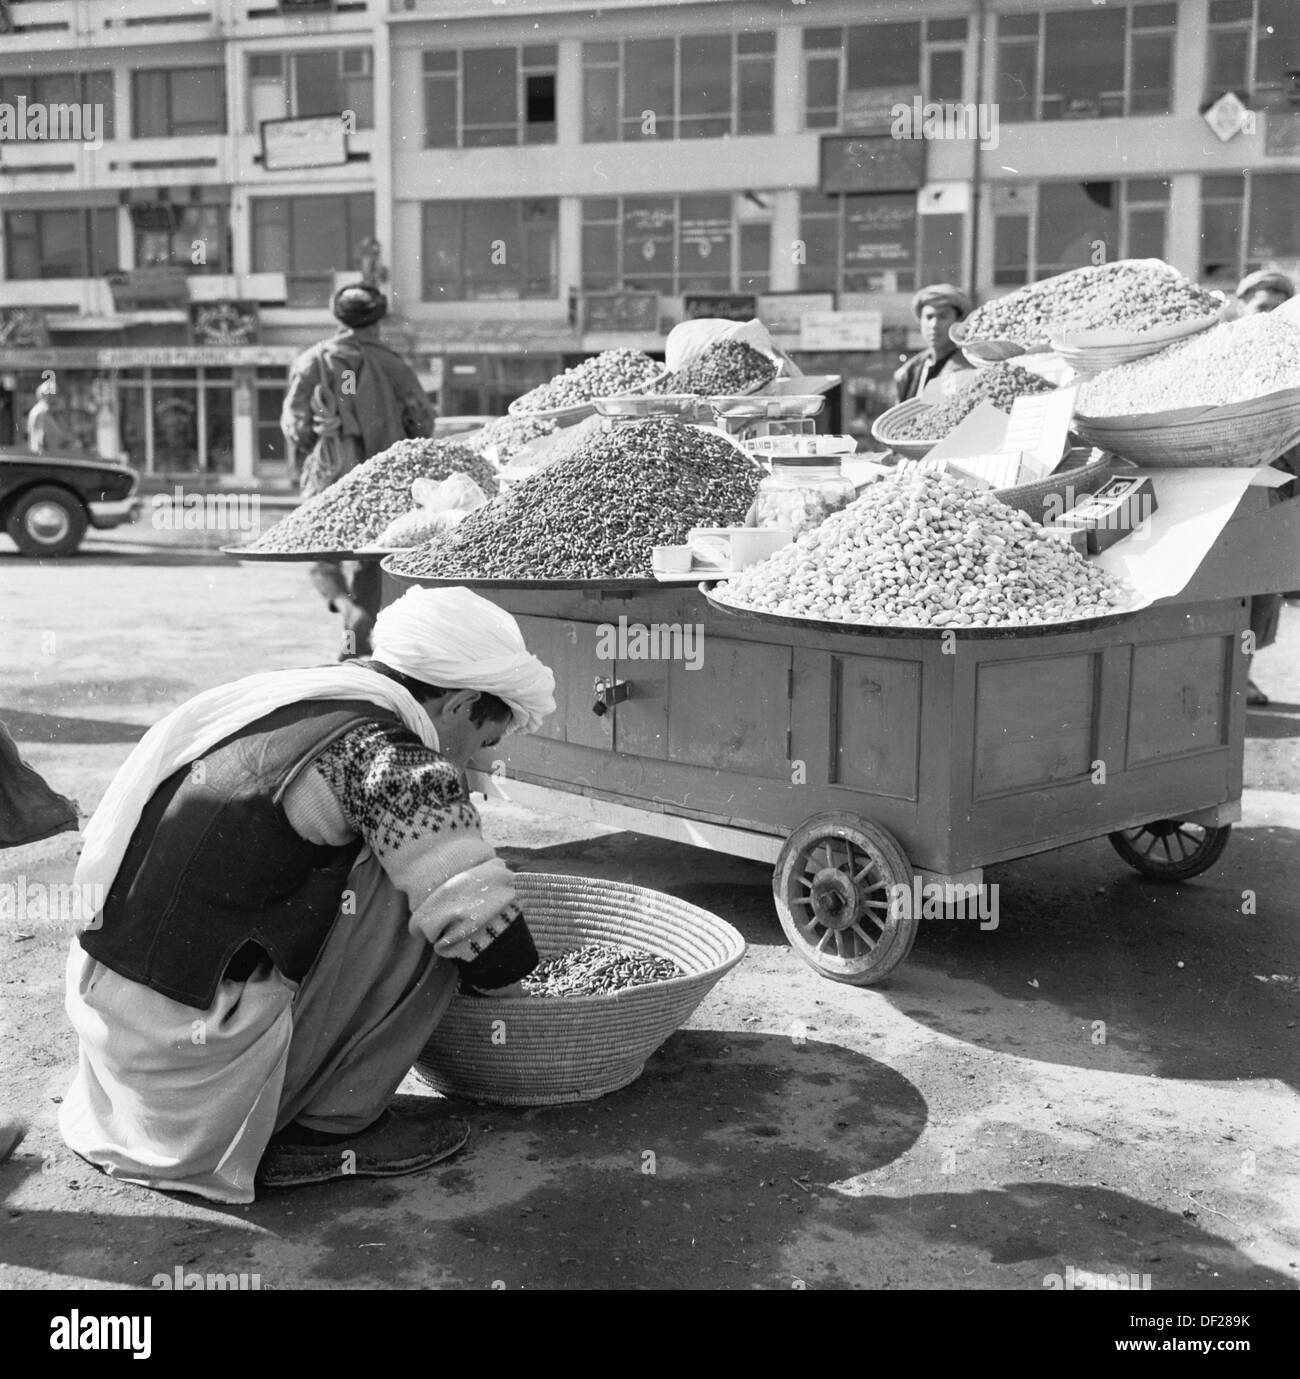 Geschichtsbild from1950s durch J Allan Cash zeigt eine afghanisch-Street-Händler in Kabul, Afghanistan Zubereitung von Speisen für seinem Stall. Stockfoto